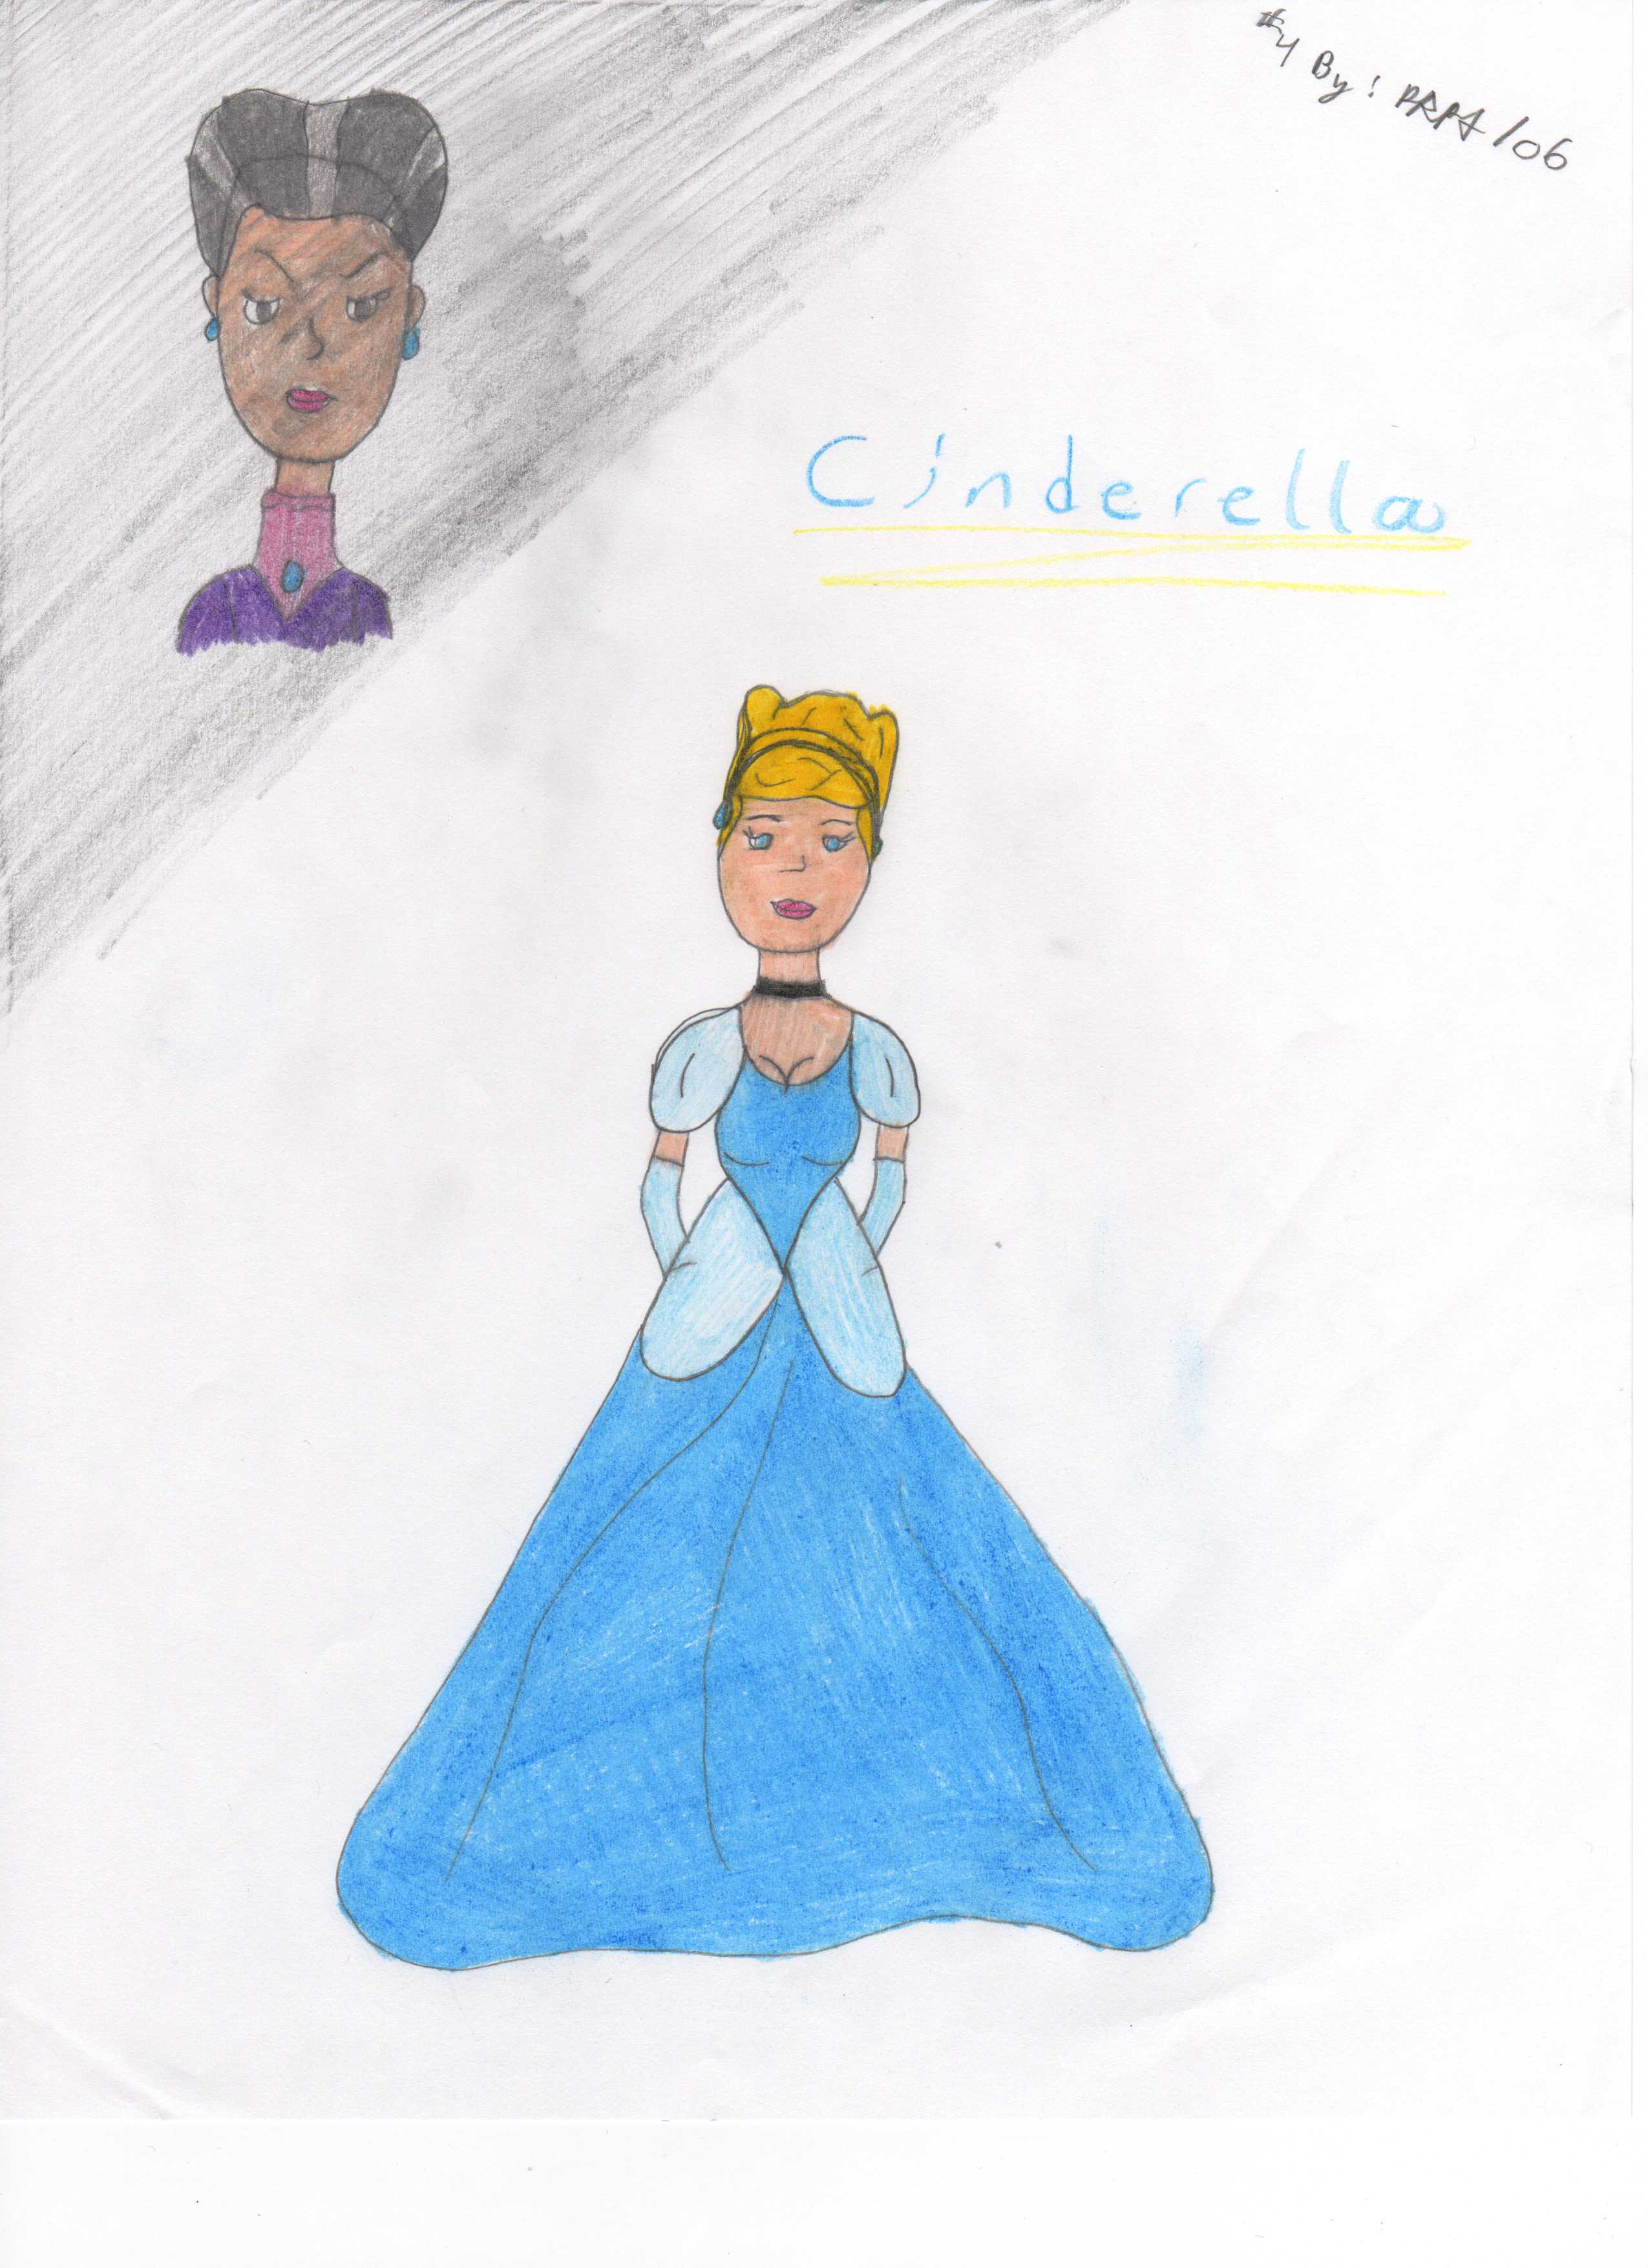 dreamer Cinderella by morticia13